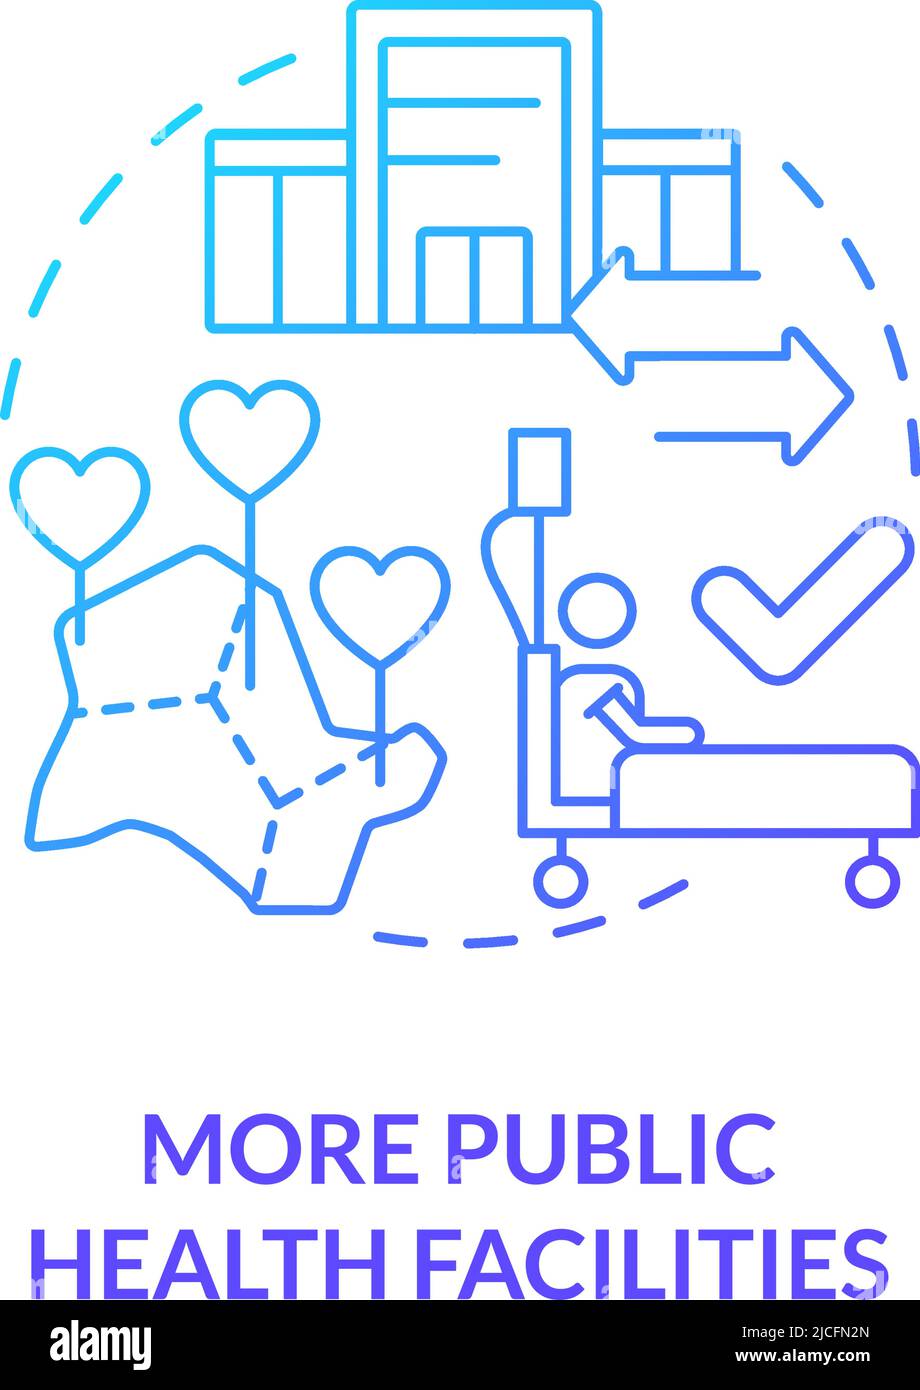 Más instalaciones de salud pública icono del concepto de gradiente azul Ilustración del Vector